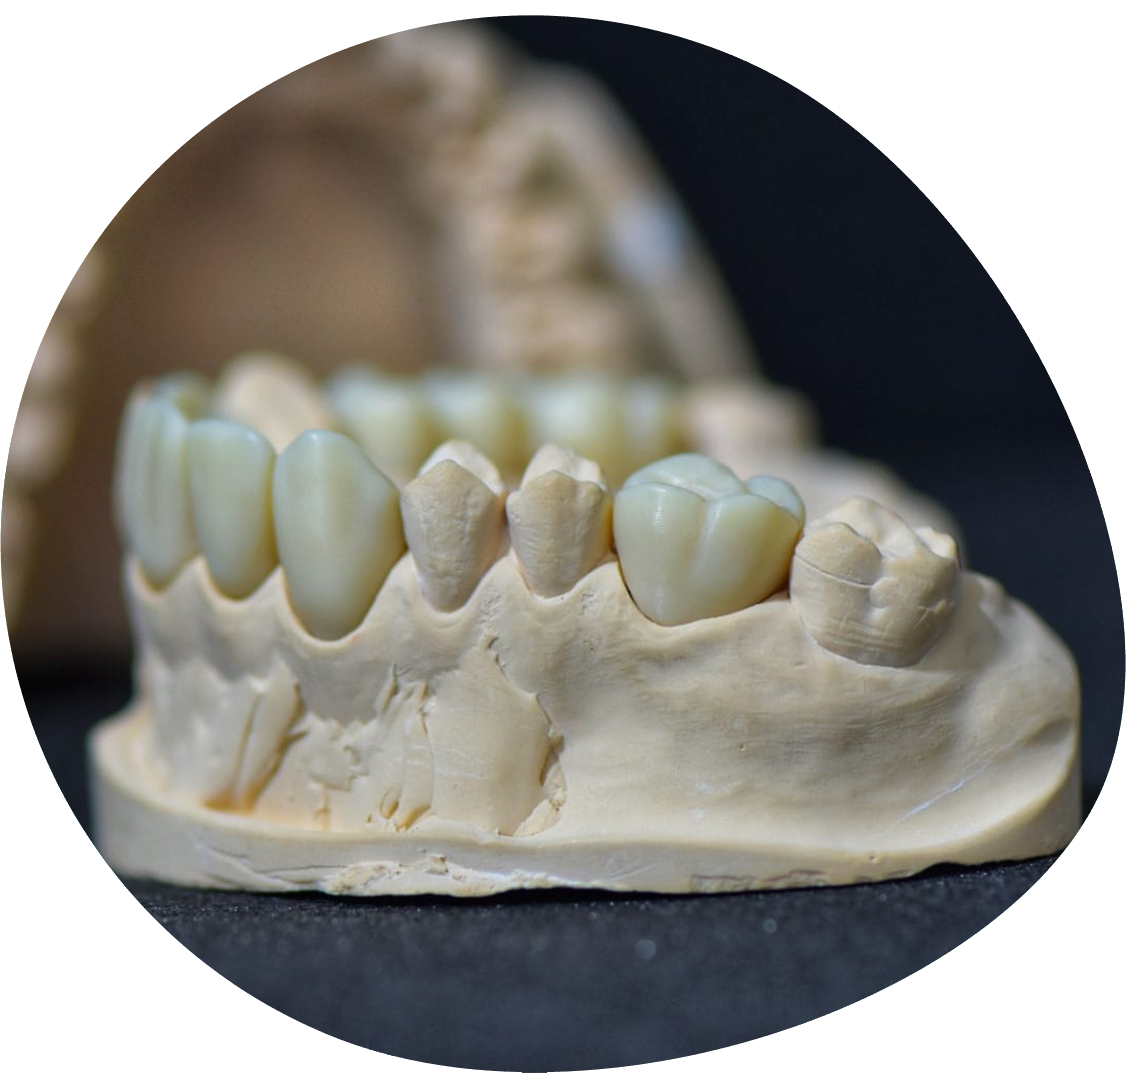 https://laboratoriojulianaandre.pt/wp-content/uploads/2022/05/ortodontia-fixa-mask.png